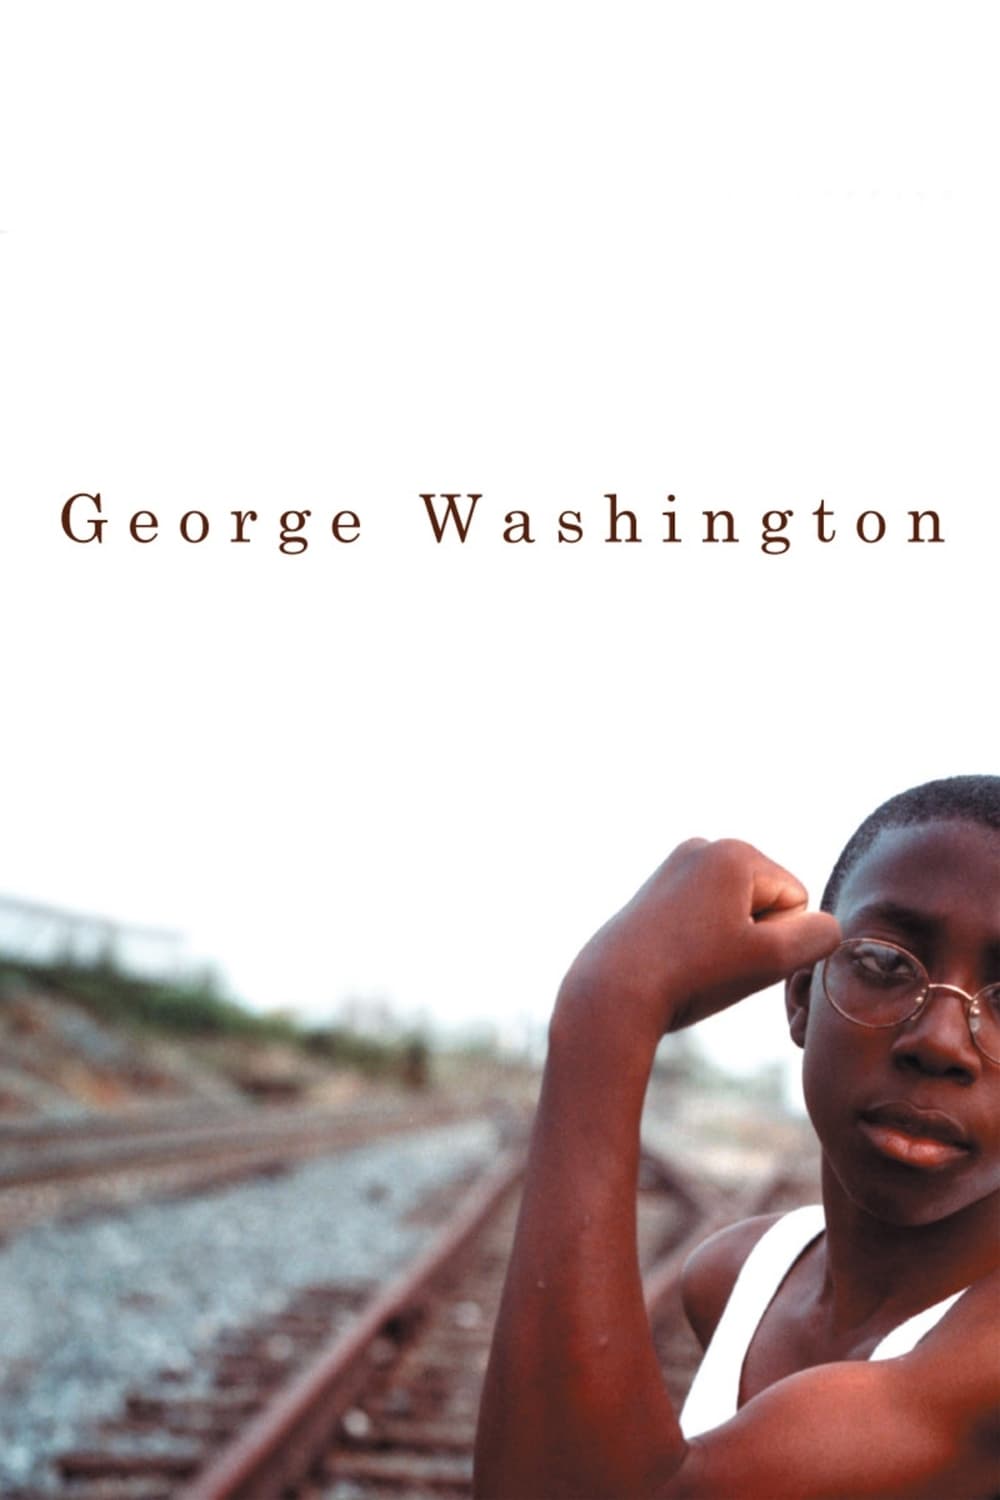 George Washington est-il disponible sur Netflix ou autre ?